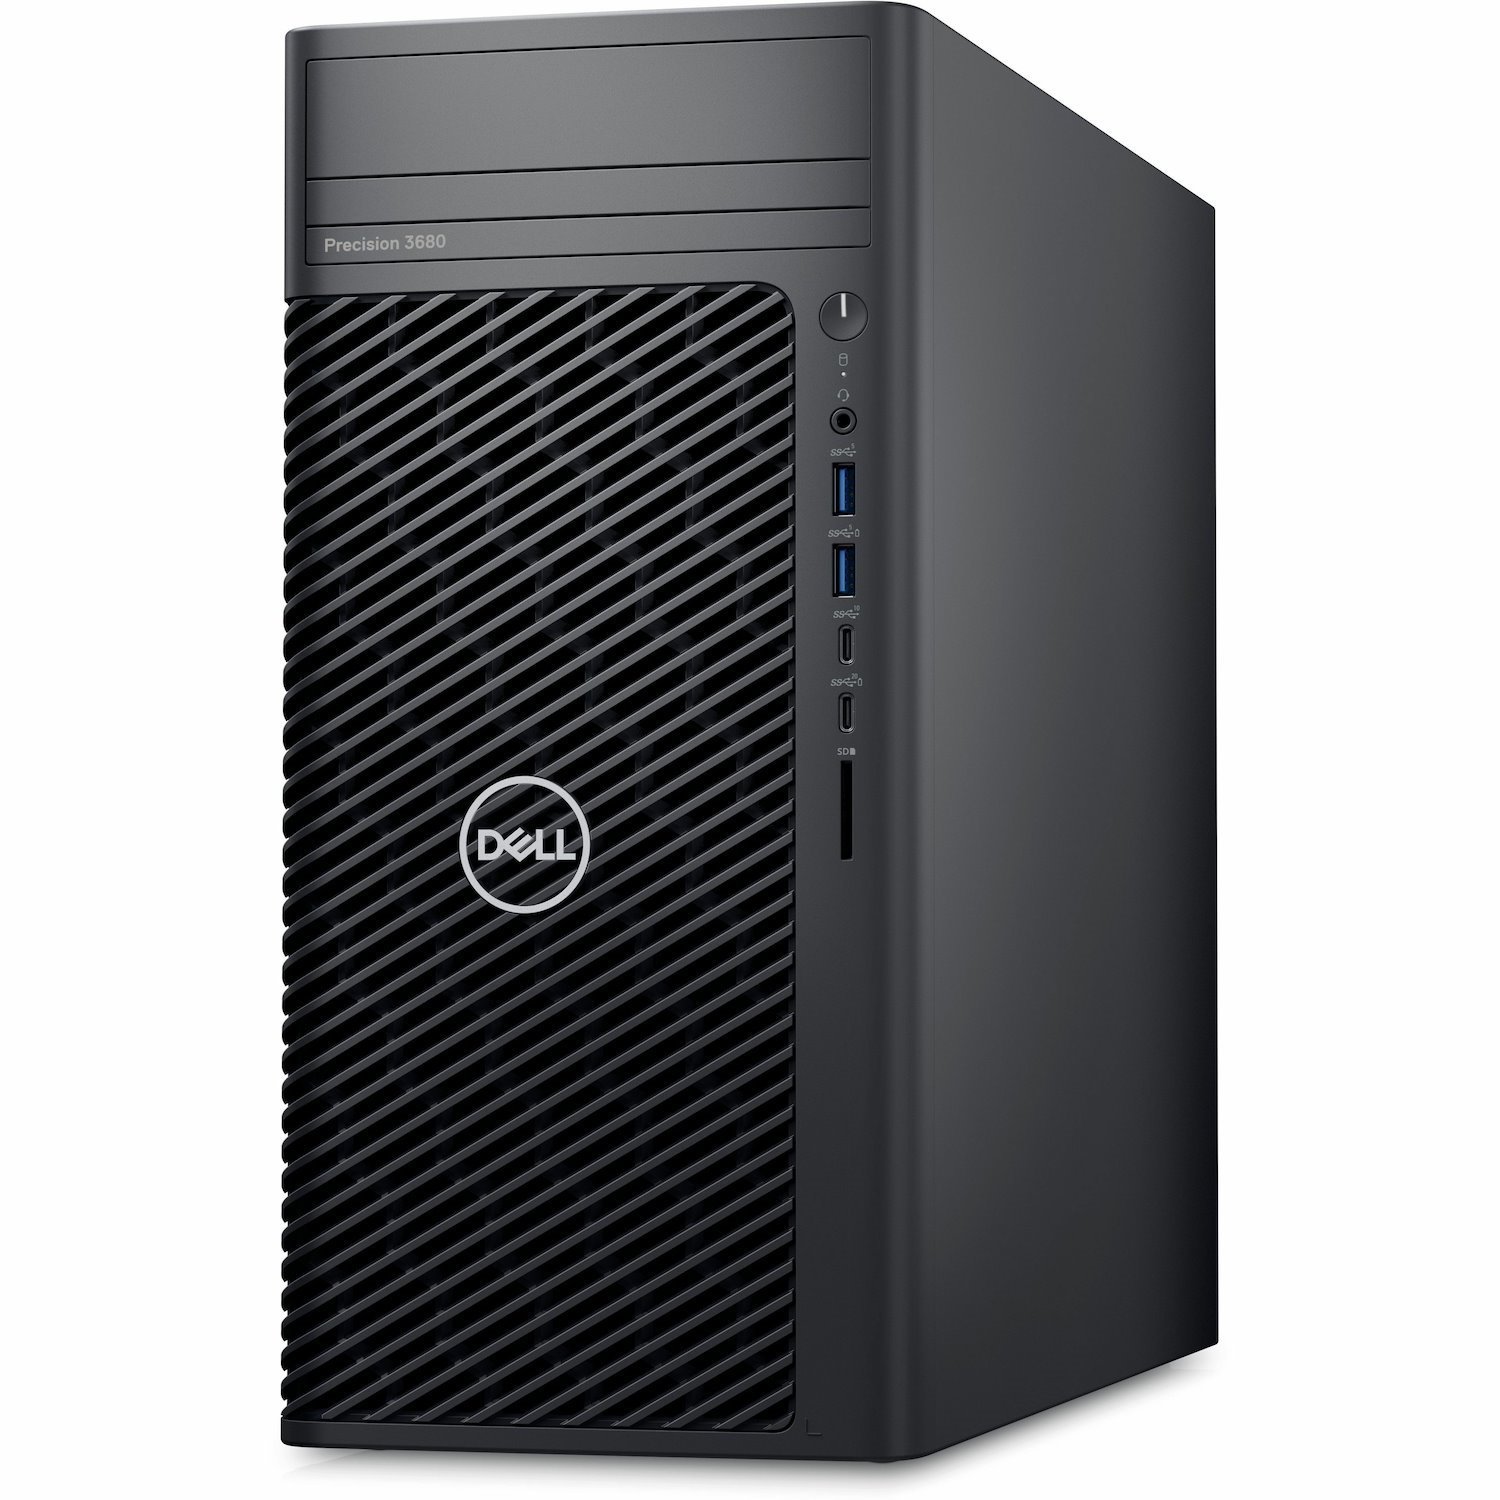 Dell Precision 3000 3680 Workstation - Intel Core i5 14th Gen i5-14500 - 16 GB - 512 GB SSD - Tower - Black